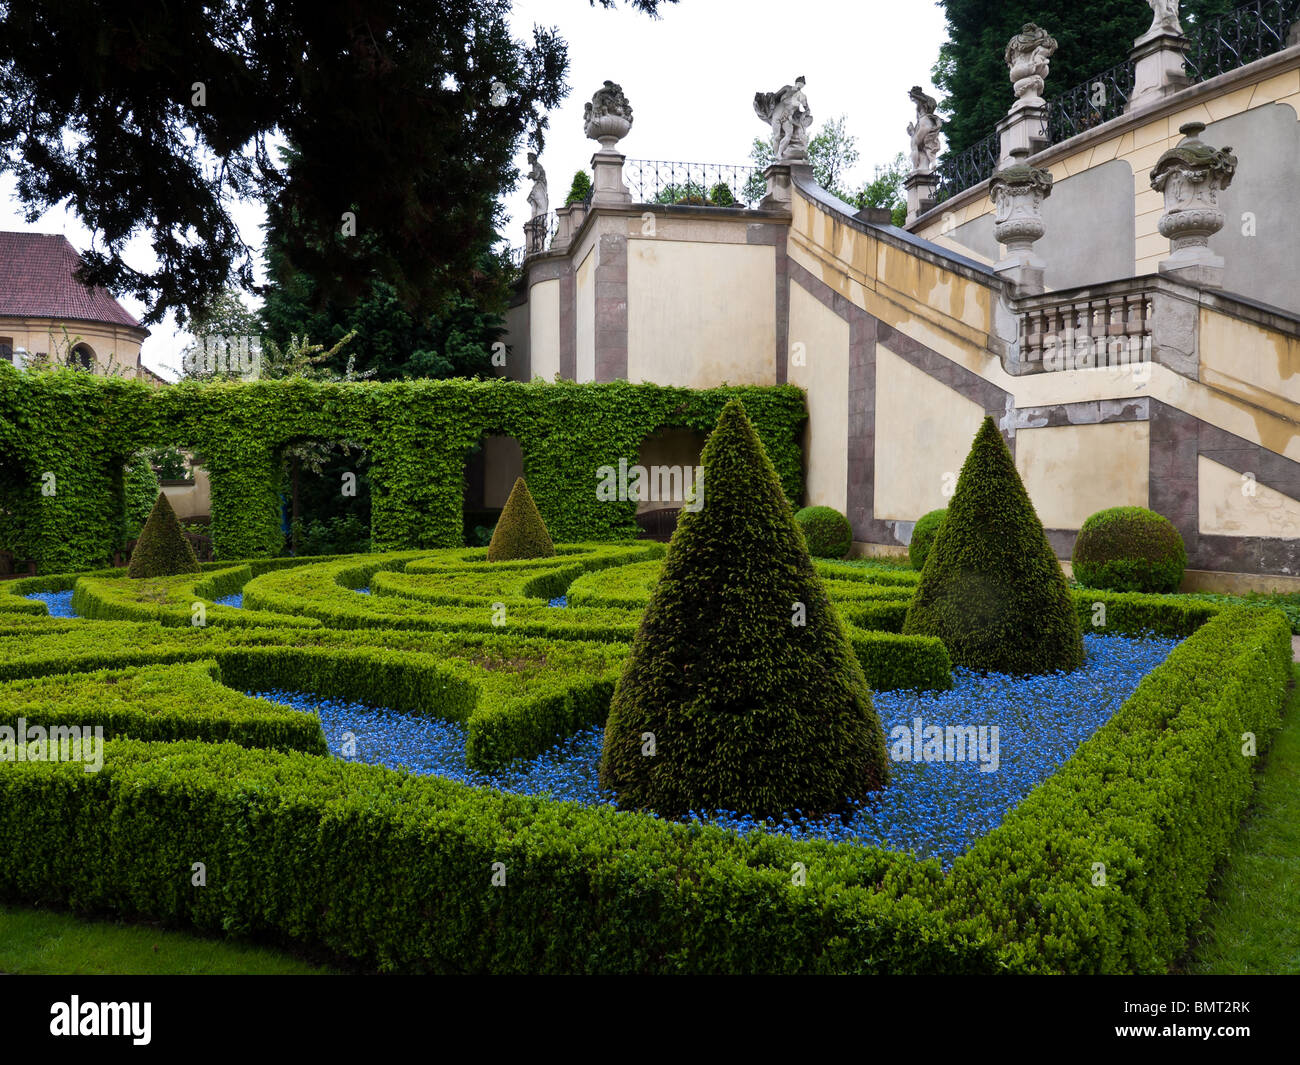 Vrtbovská zahrada - Il Vrtba giardino barocco, Praga, Repubblica Ceca Republc Foto Stock